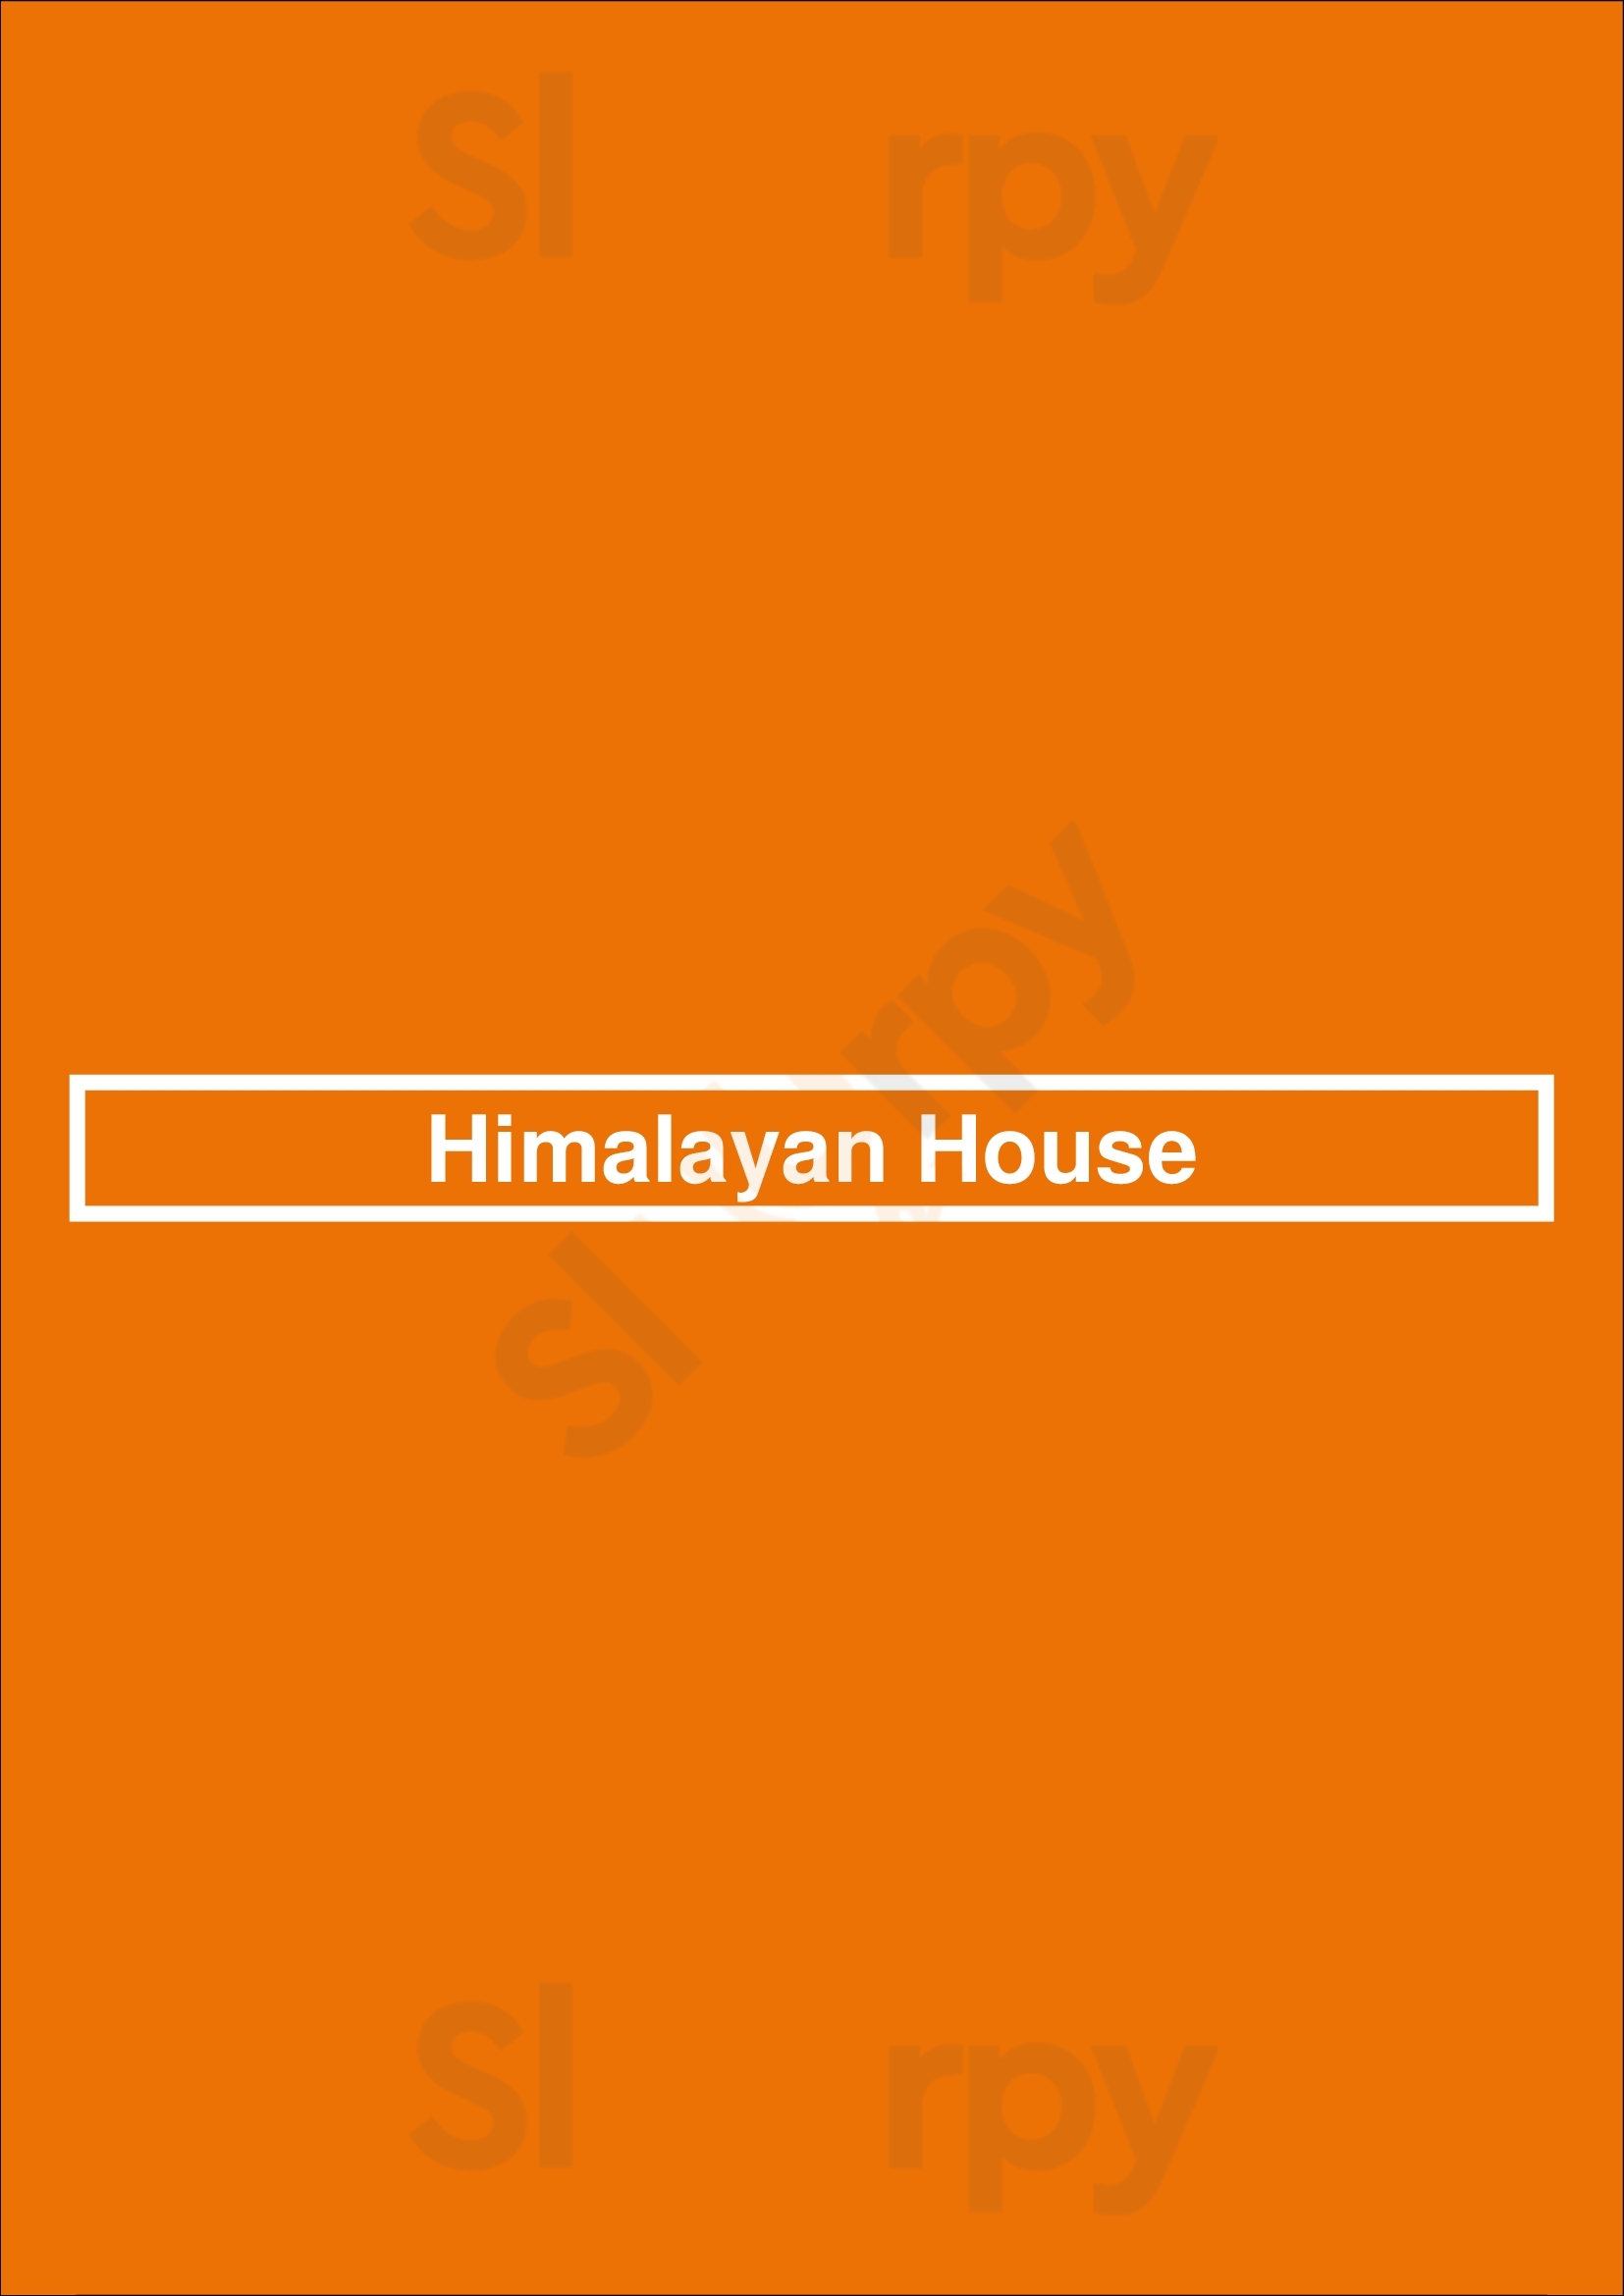 Himalayan House Baltimore Menu - 1